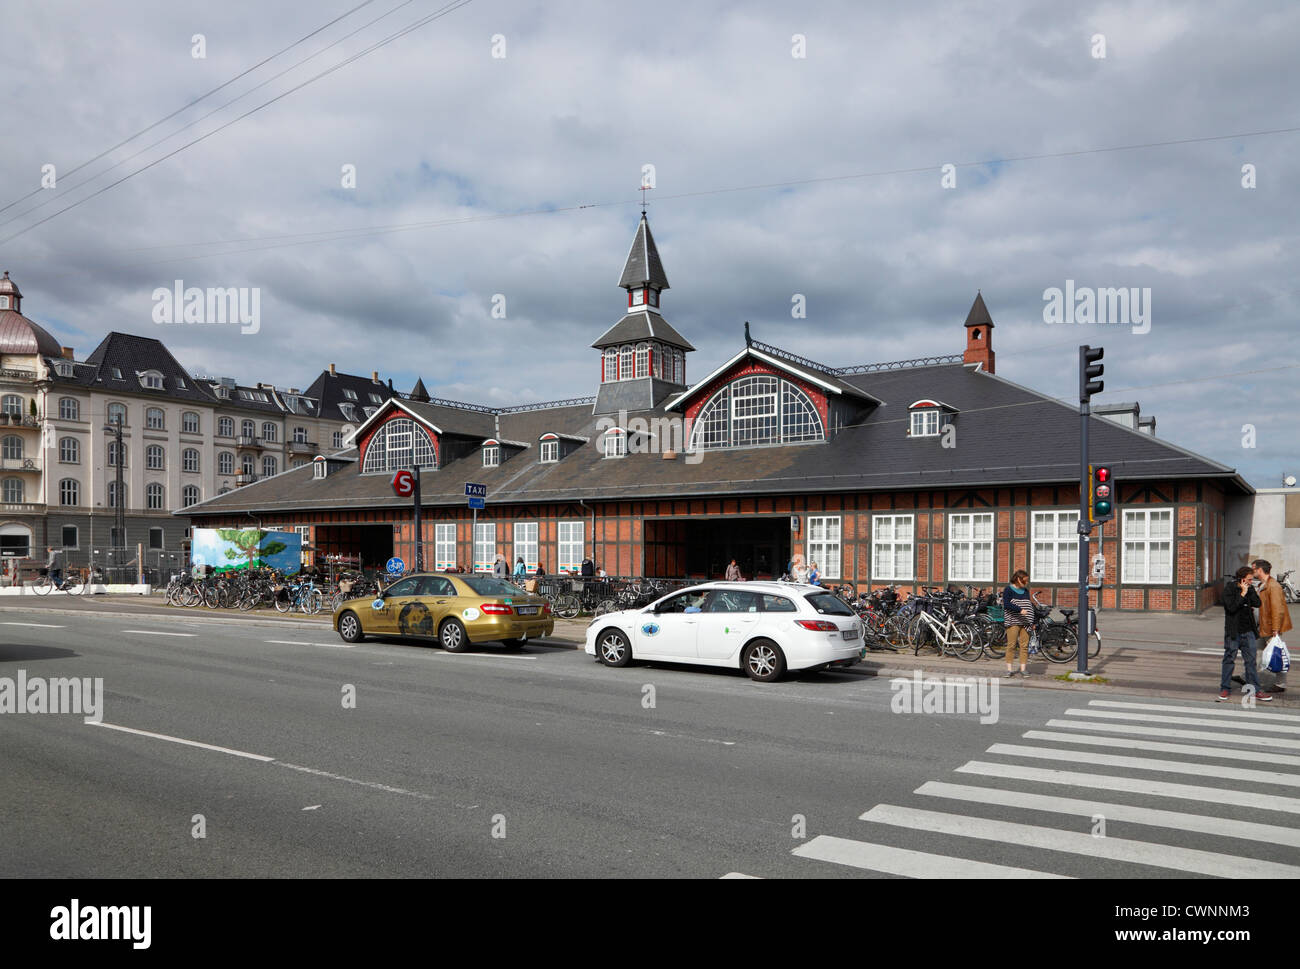 La stazione ferroviaria è quella di Østerport a Oslo Plads nella parte nord-est di Copenhagen, Danimarca. Originariamente dal 1897. Street view. Foto Stock